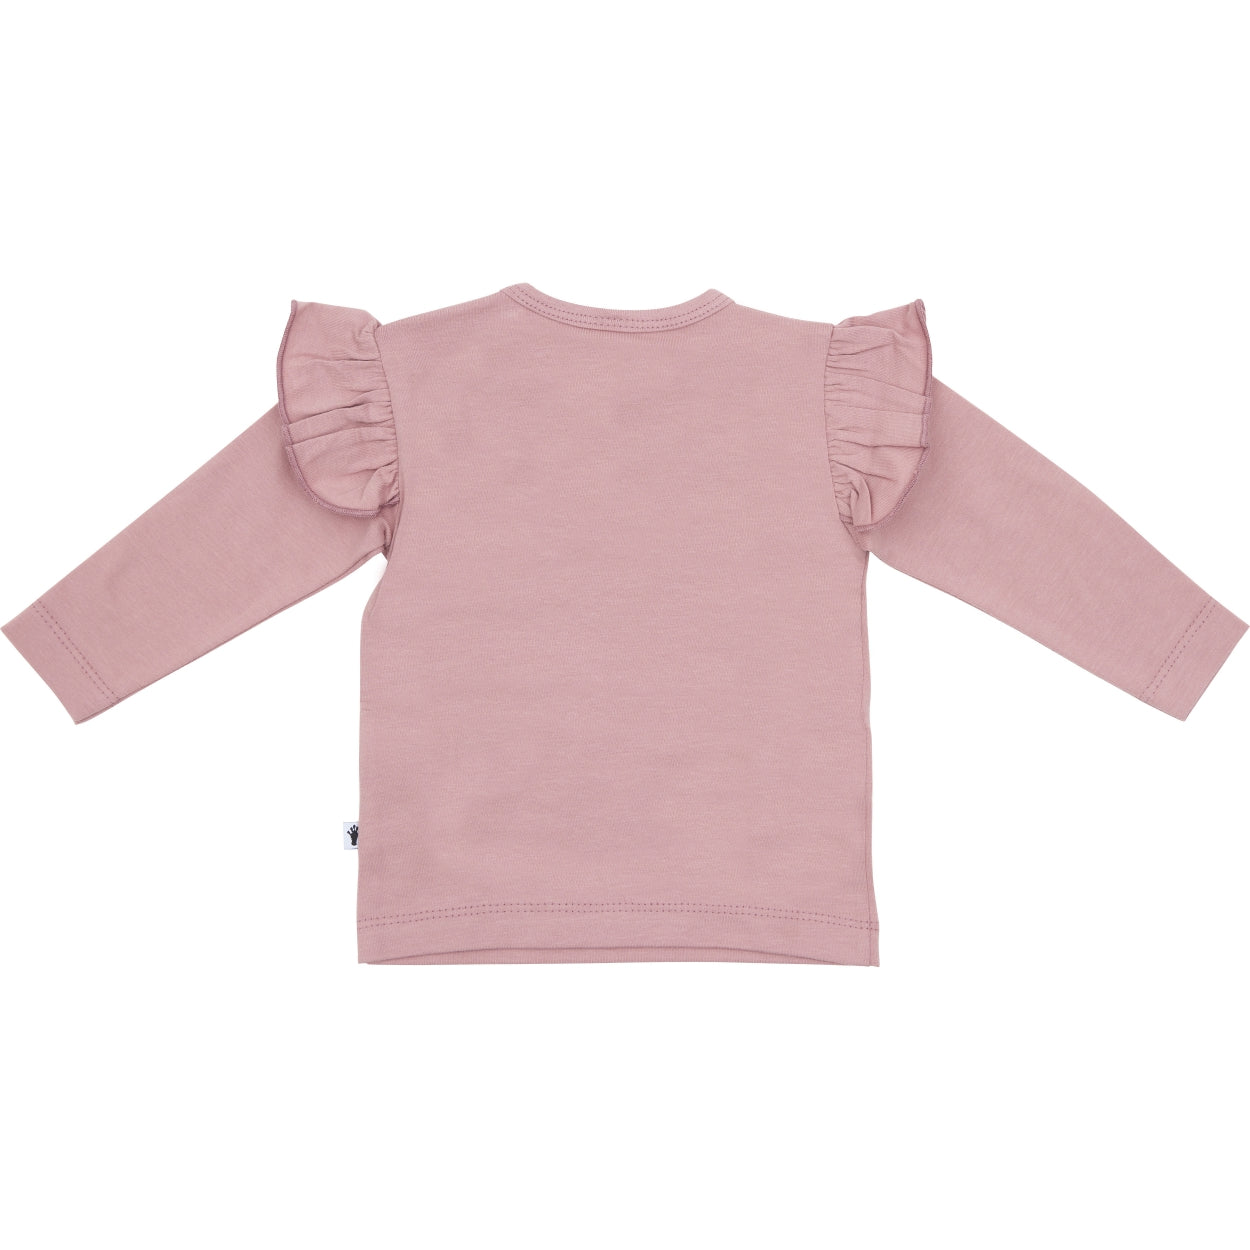 Meisjes Shirt Ruffle van Klein Baby in de kleur Dusty Rose in maat 74.